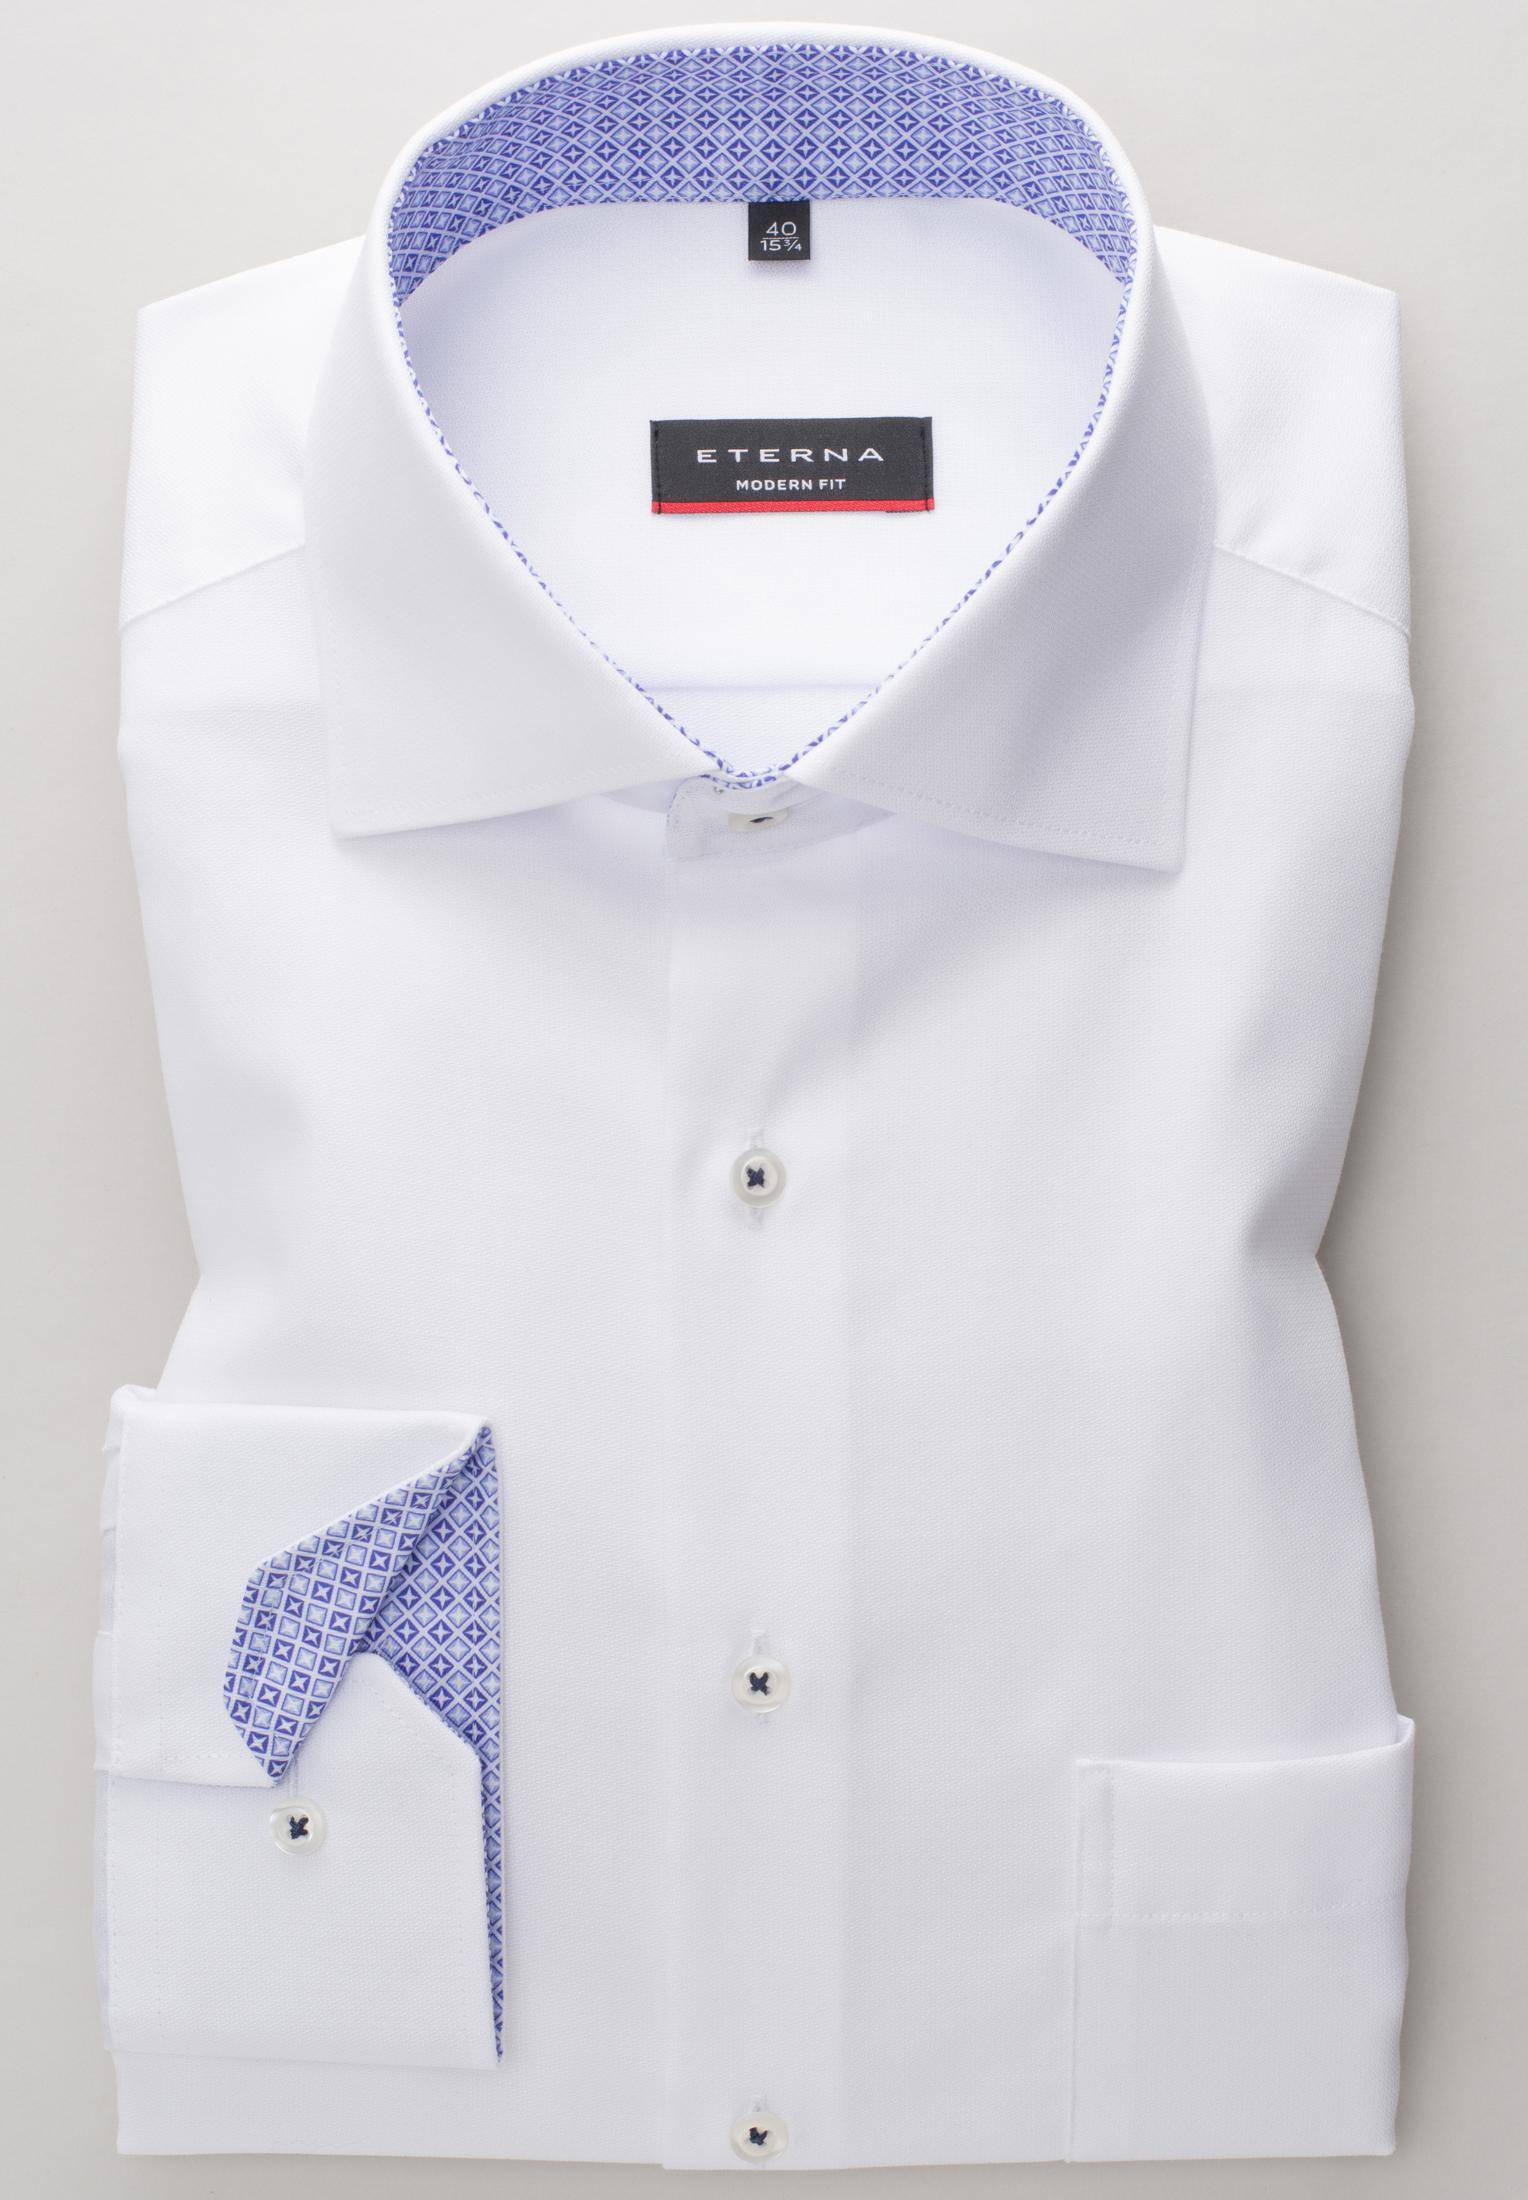 Мужская рубашка ETERNA, белая, цвет белый, размер 58 - фото 2